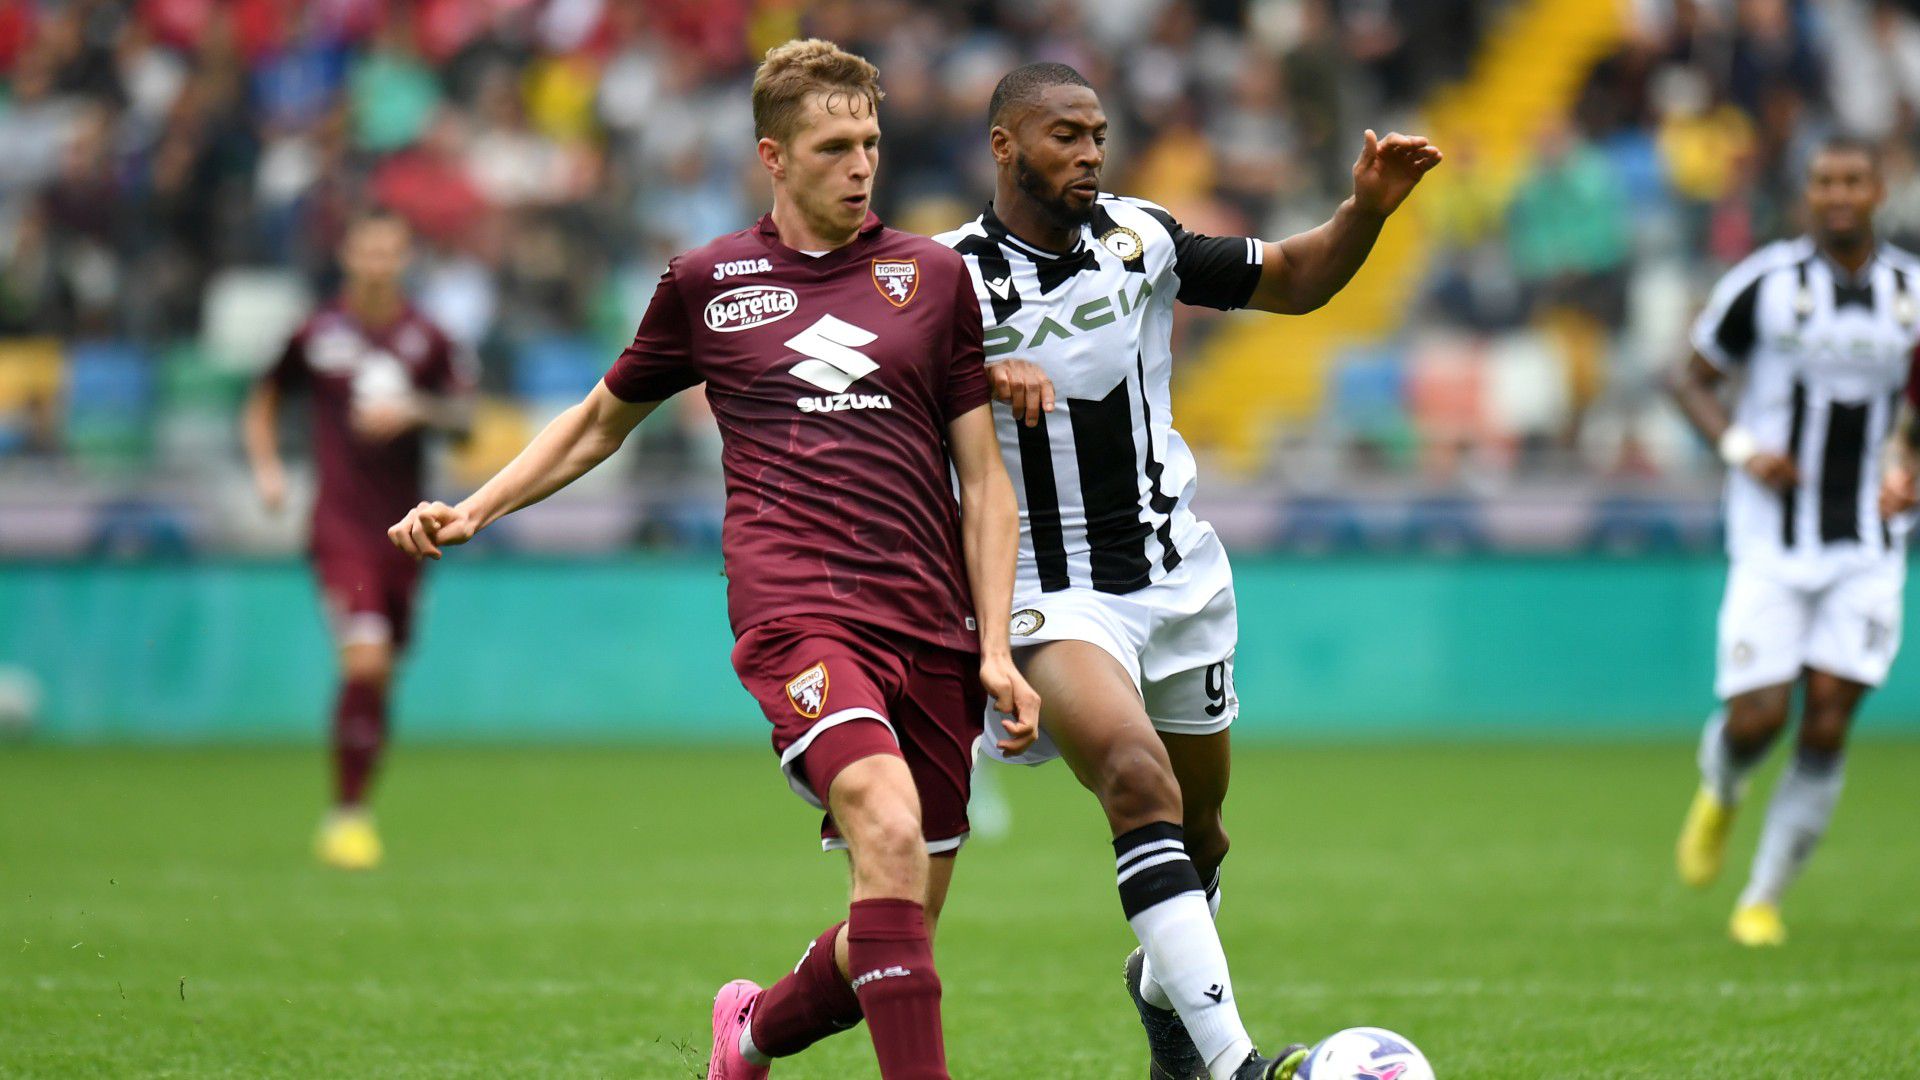 A Torino szakította meg az Udinese veretlenségi sorozatát